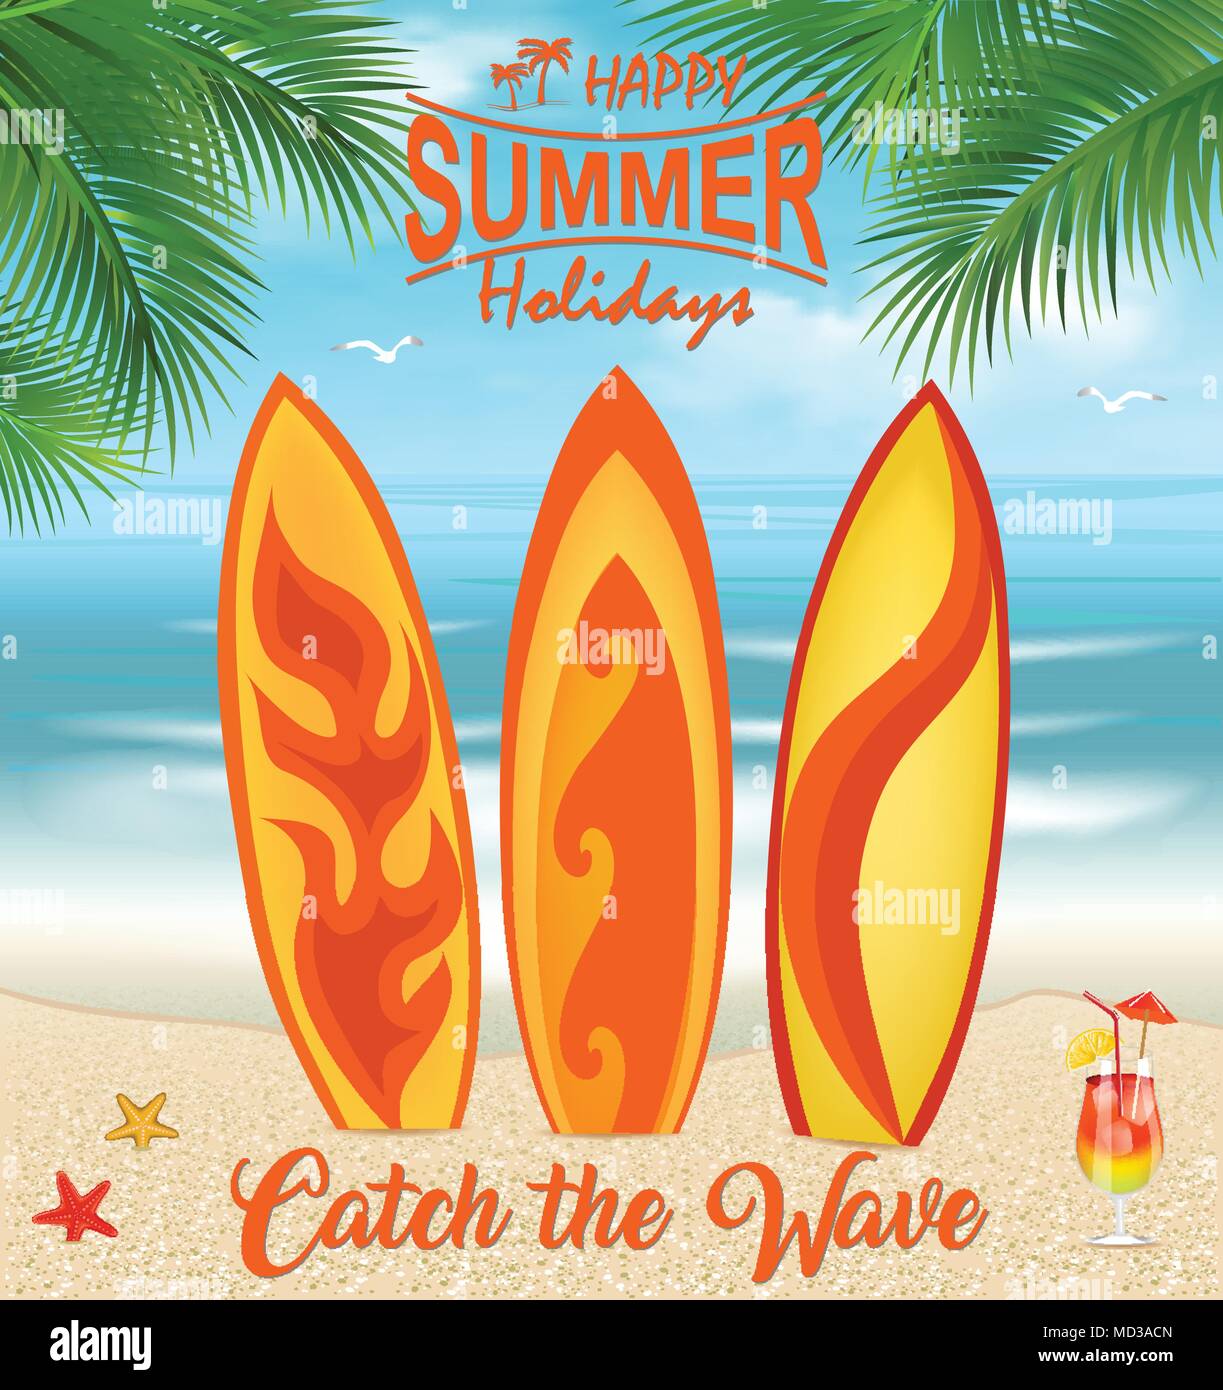 Surfbretter auf tropischen Strand mit Palmen. Surfbretter Hintergrund. Sommer Urlaub. Urlaub, Reise und Ferien Stock Vektor